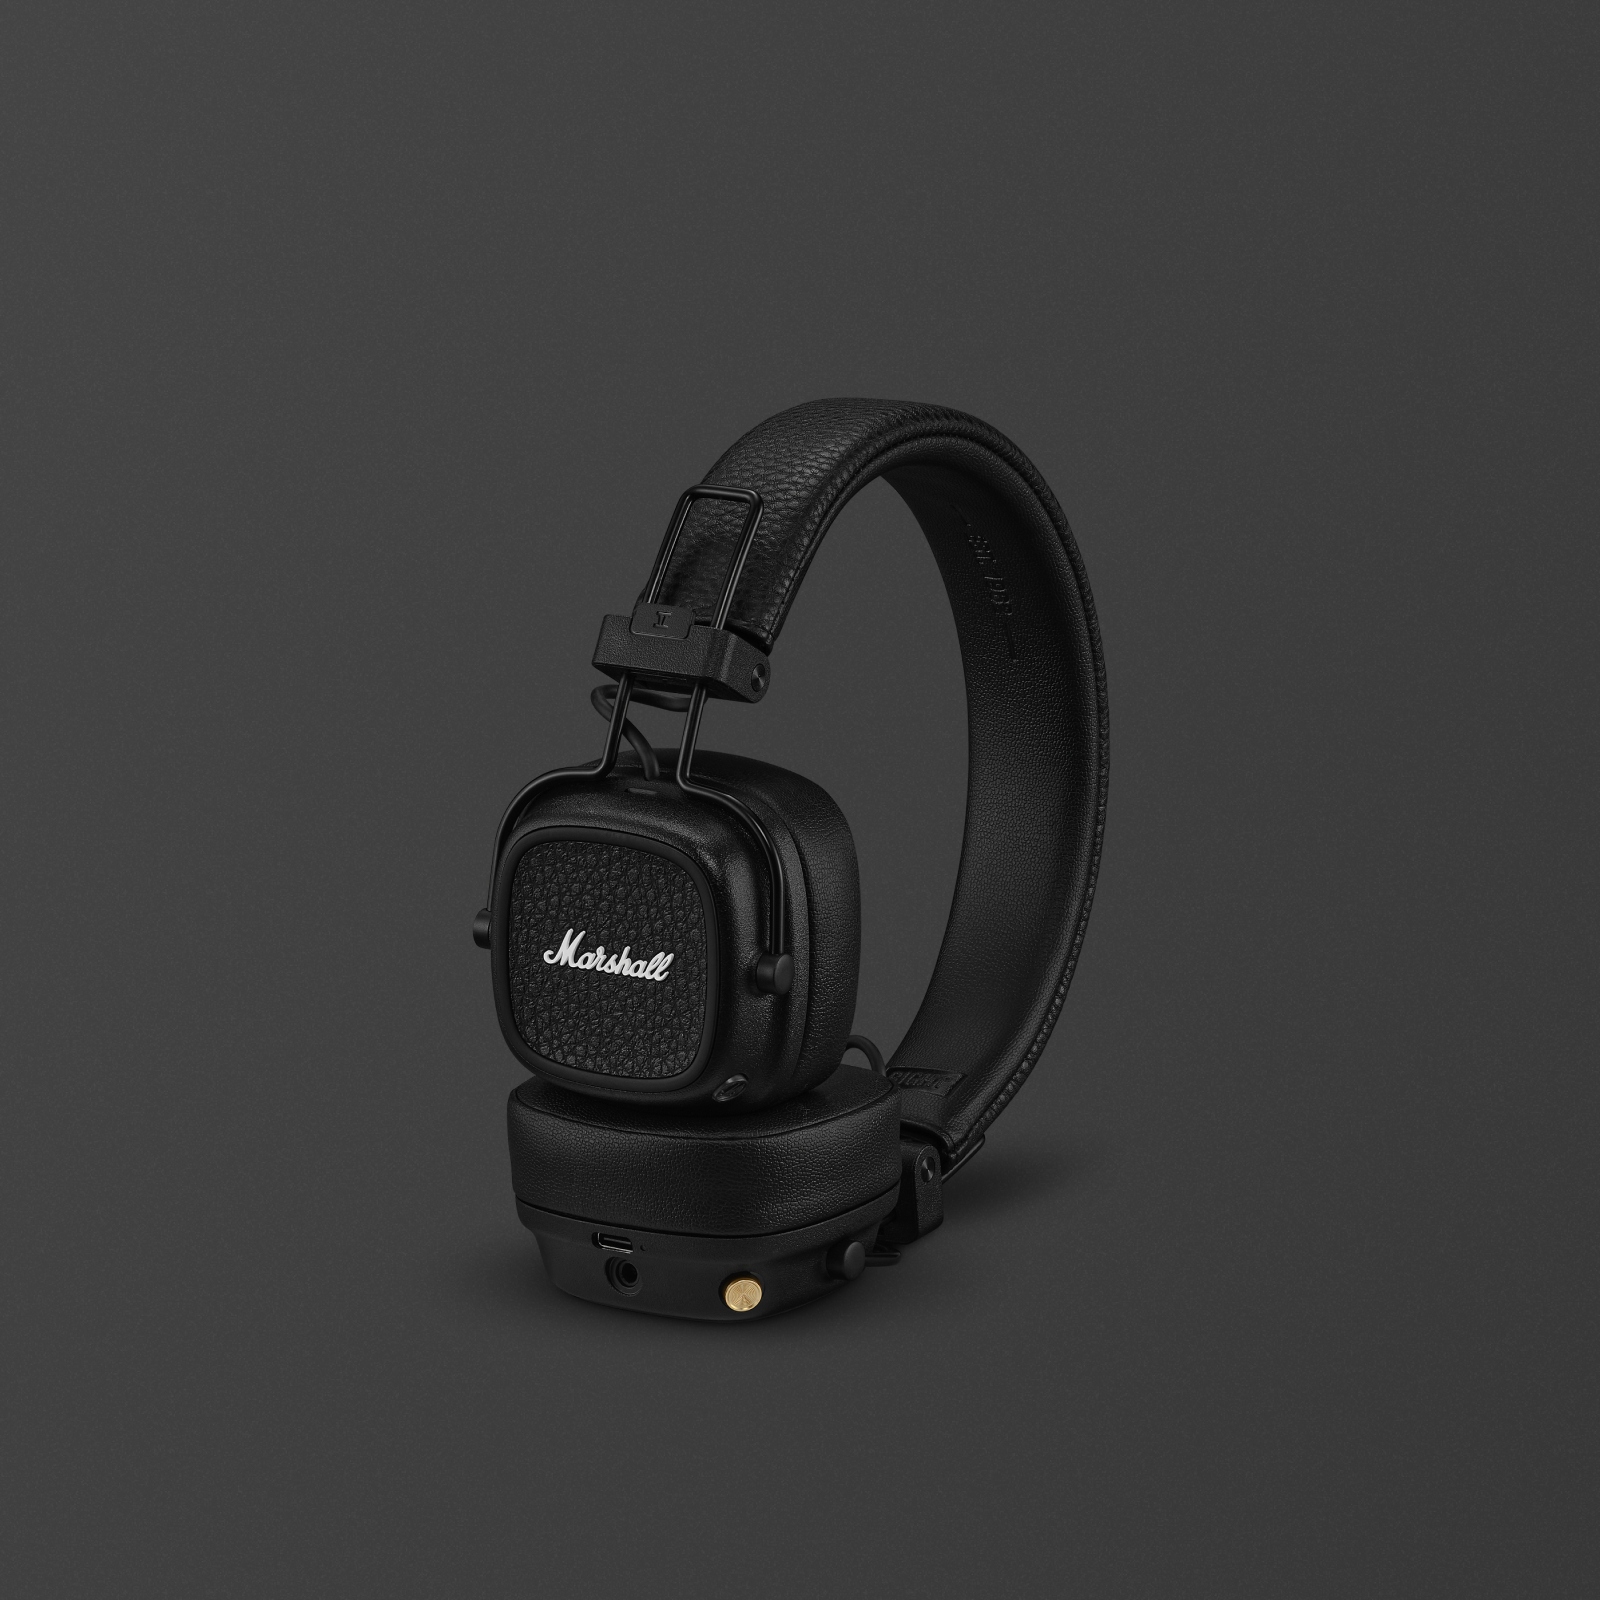 Marshall Major V on-ear headphones in black.